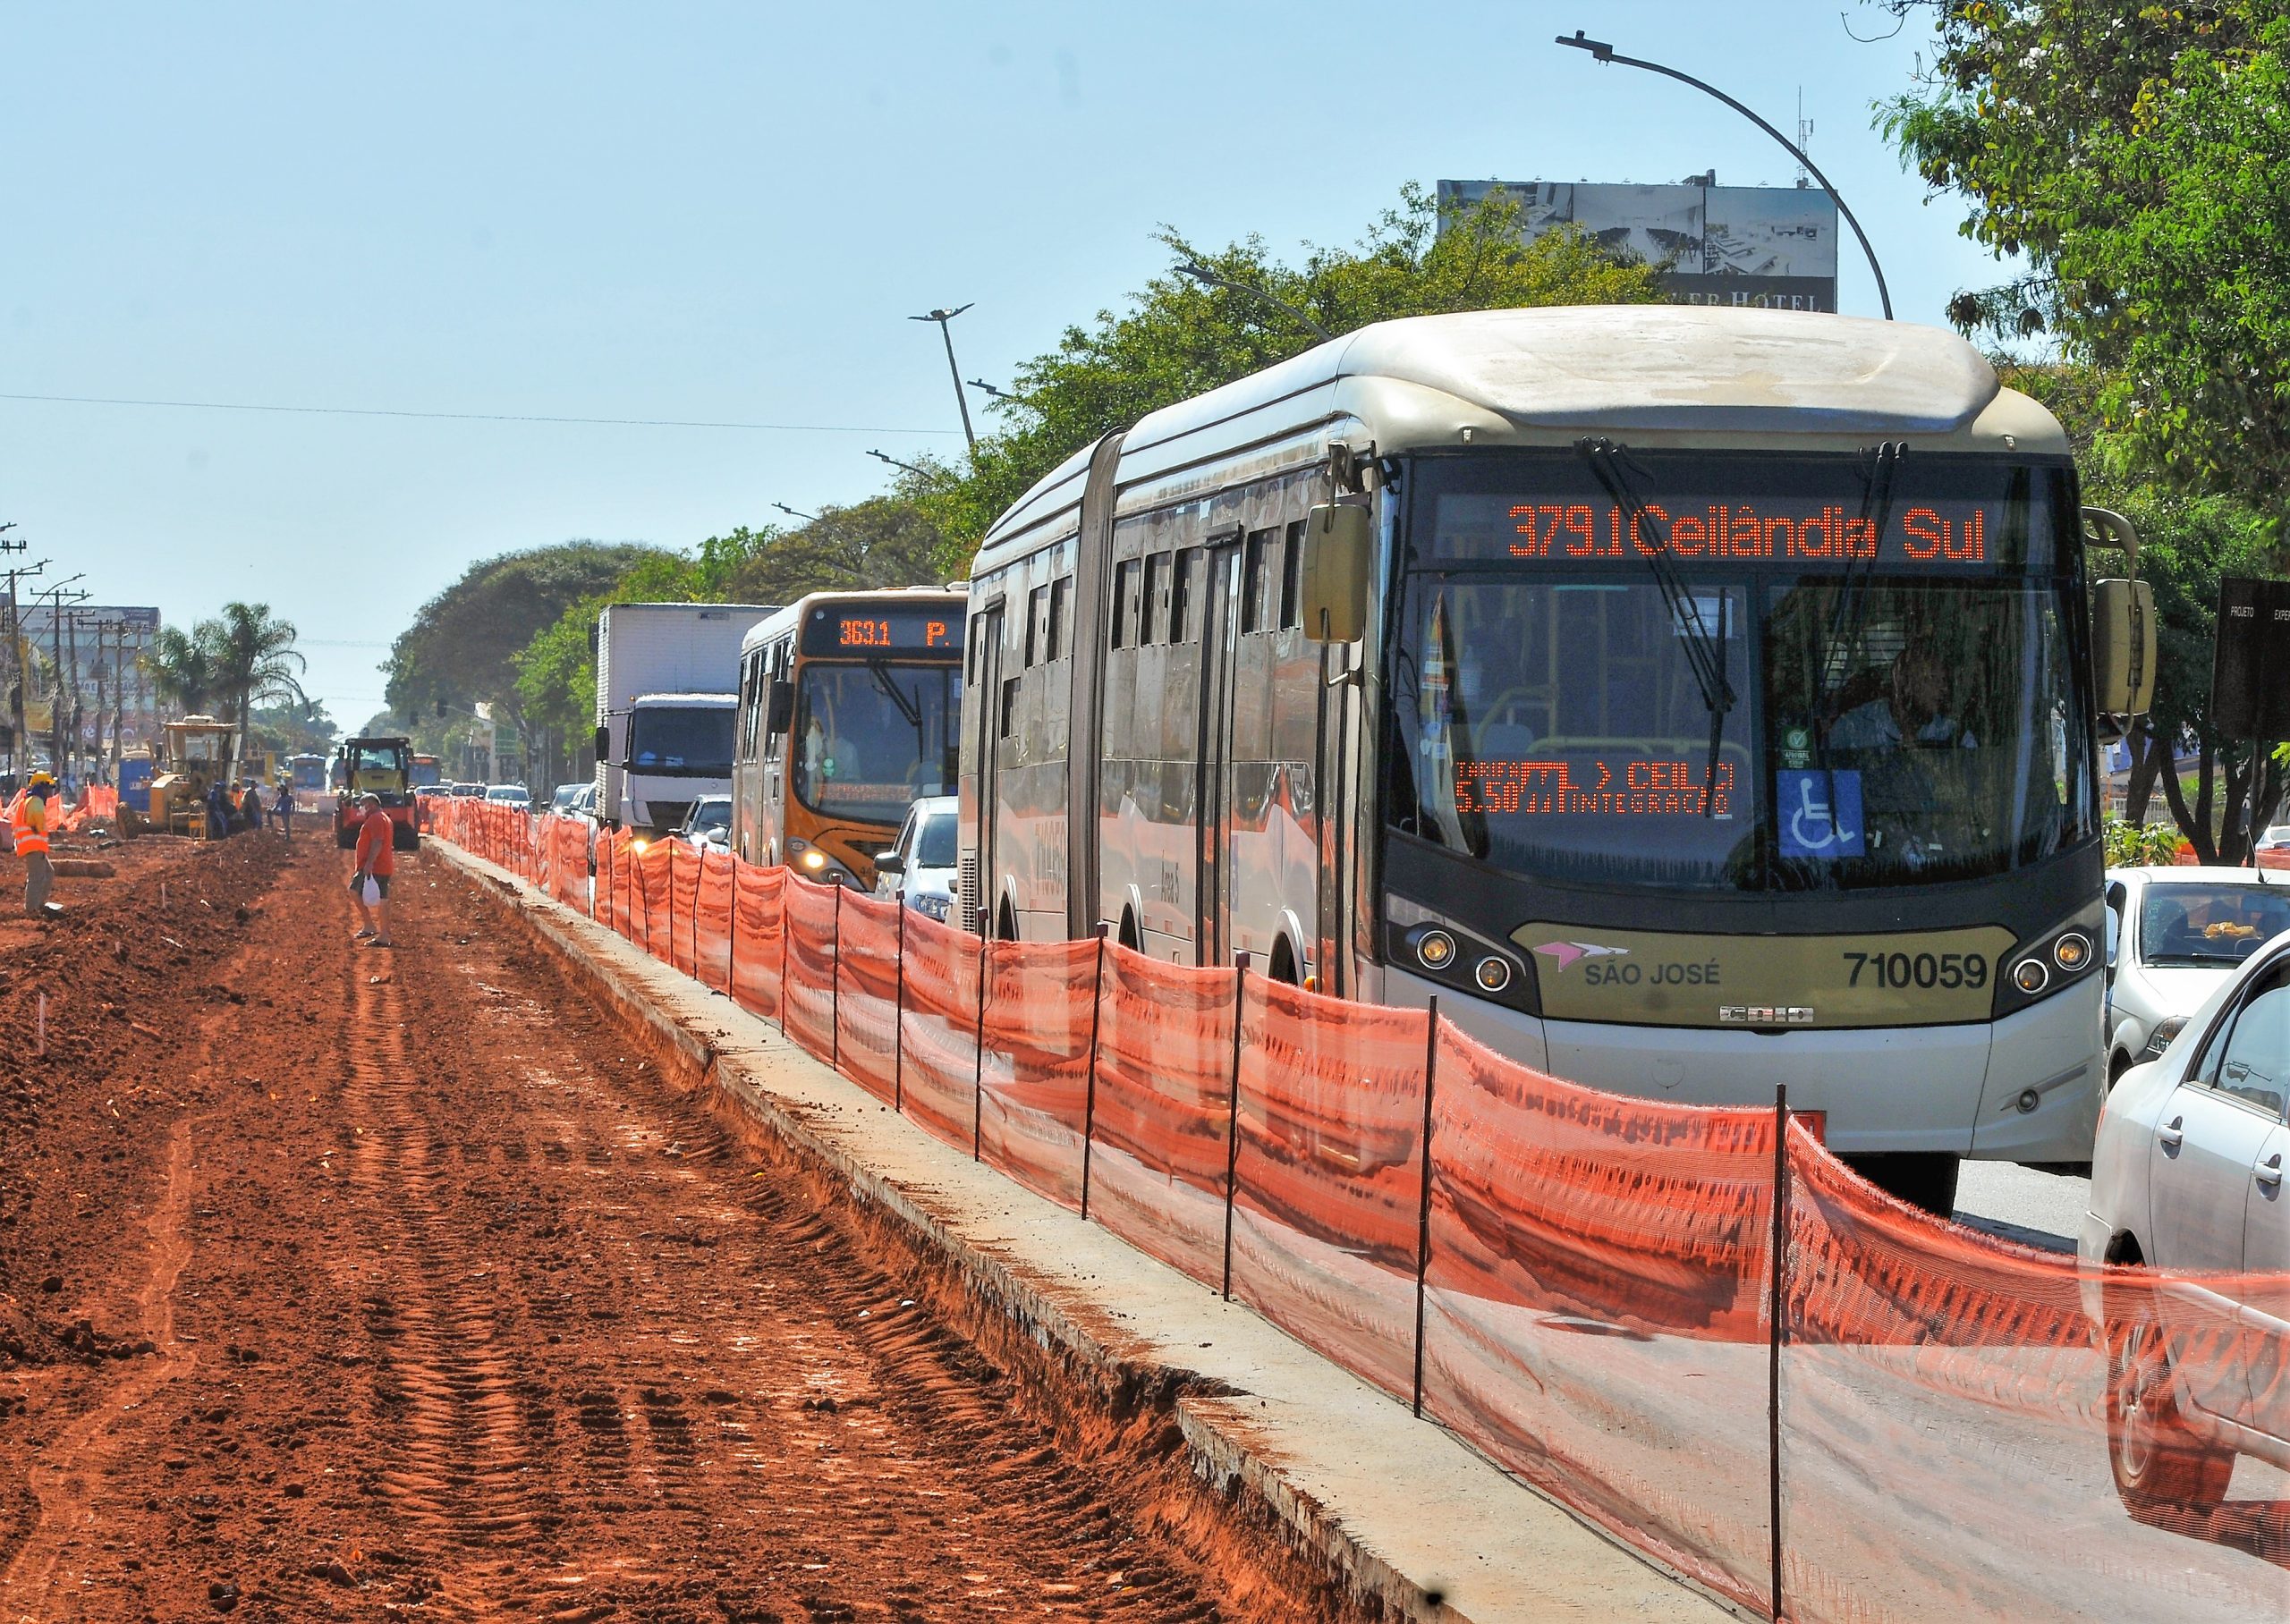 HÉLIO PRATES | Avenida vai receber pavimentação em concreto